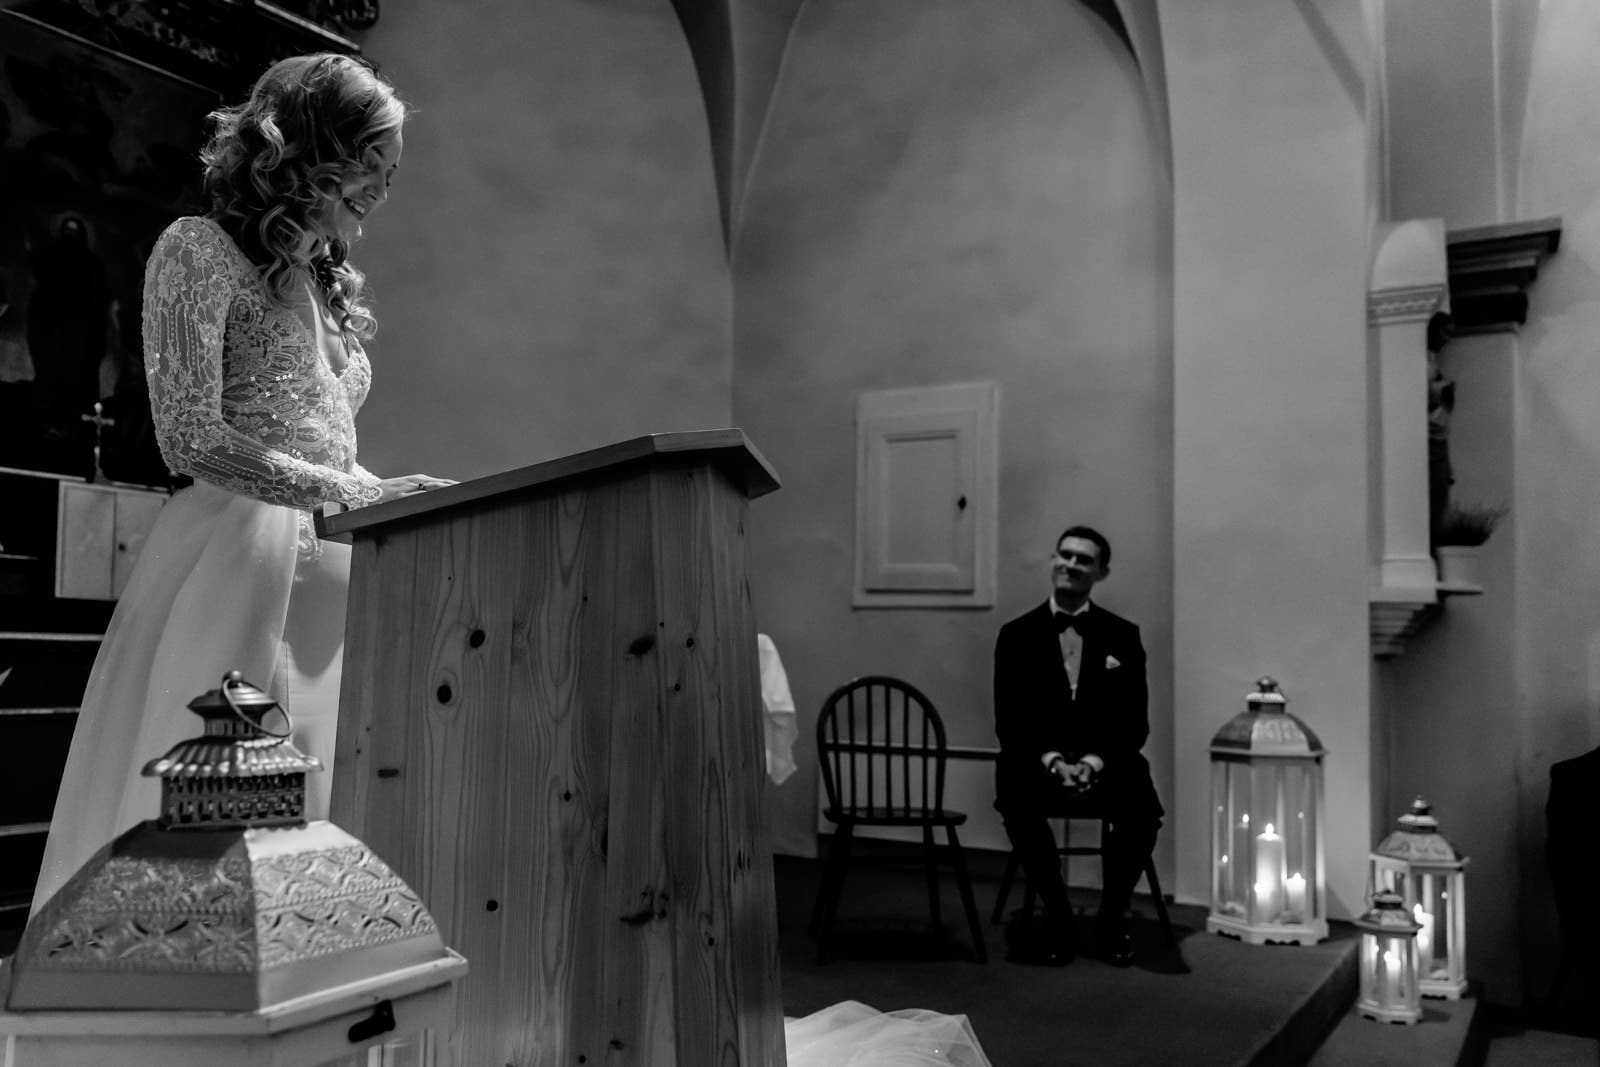 Lecture de la mariée pendant la cérémonie sous les yeux de son futur époux